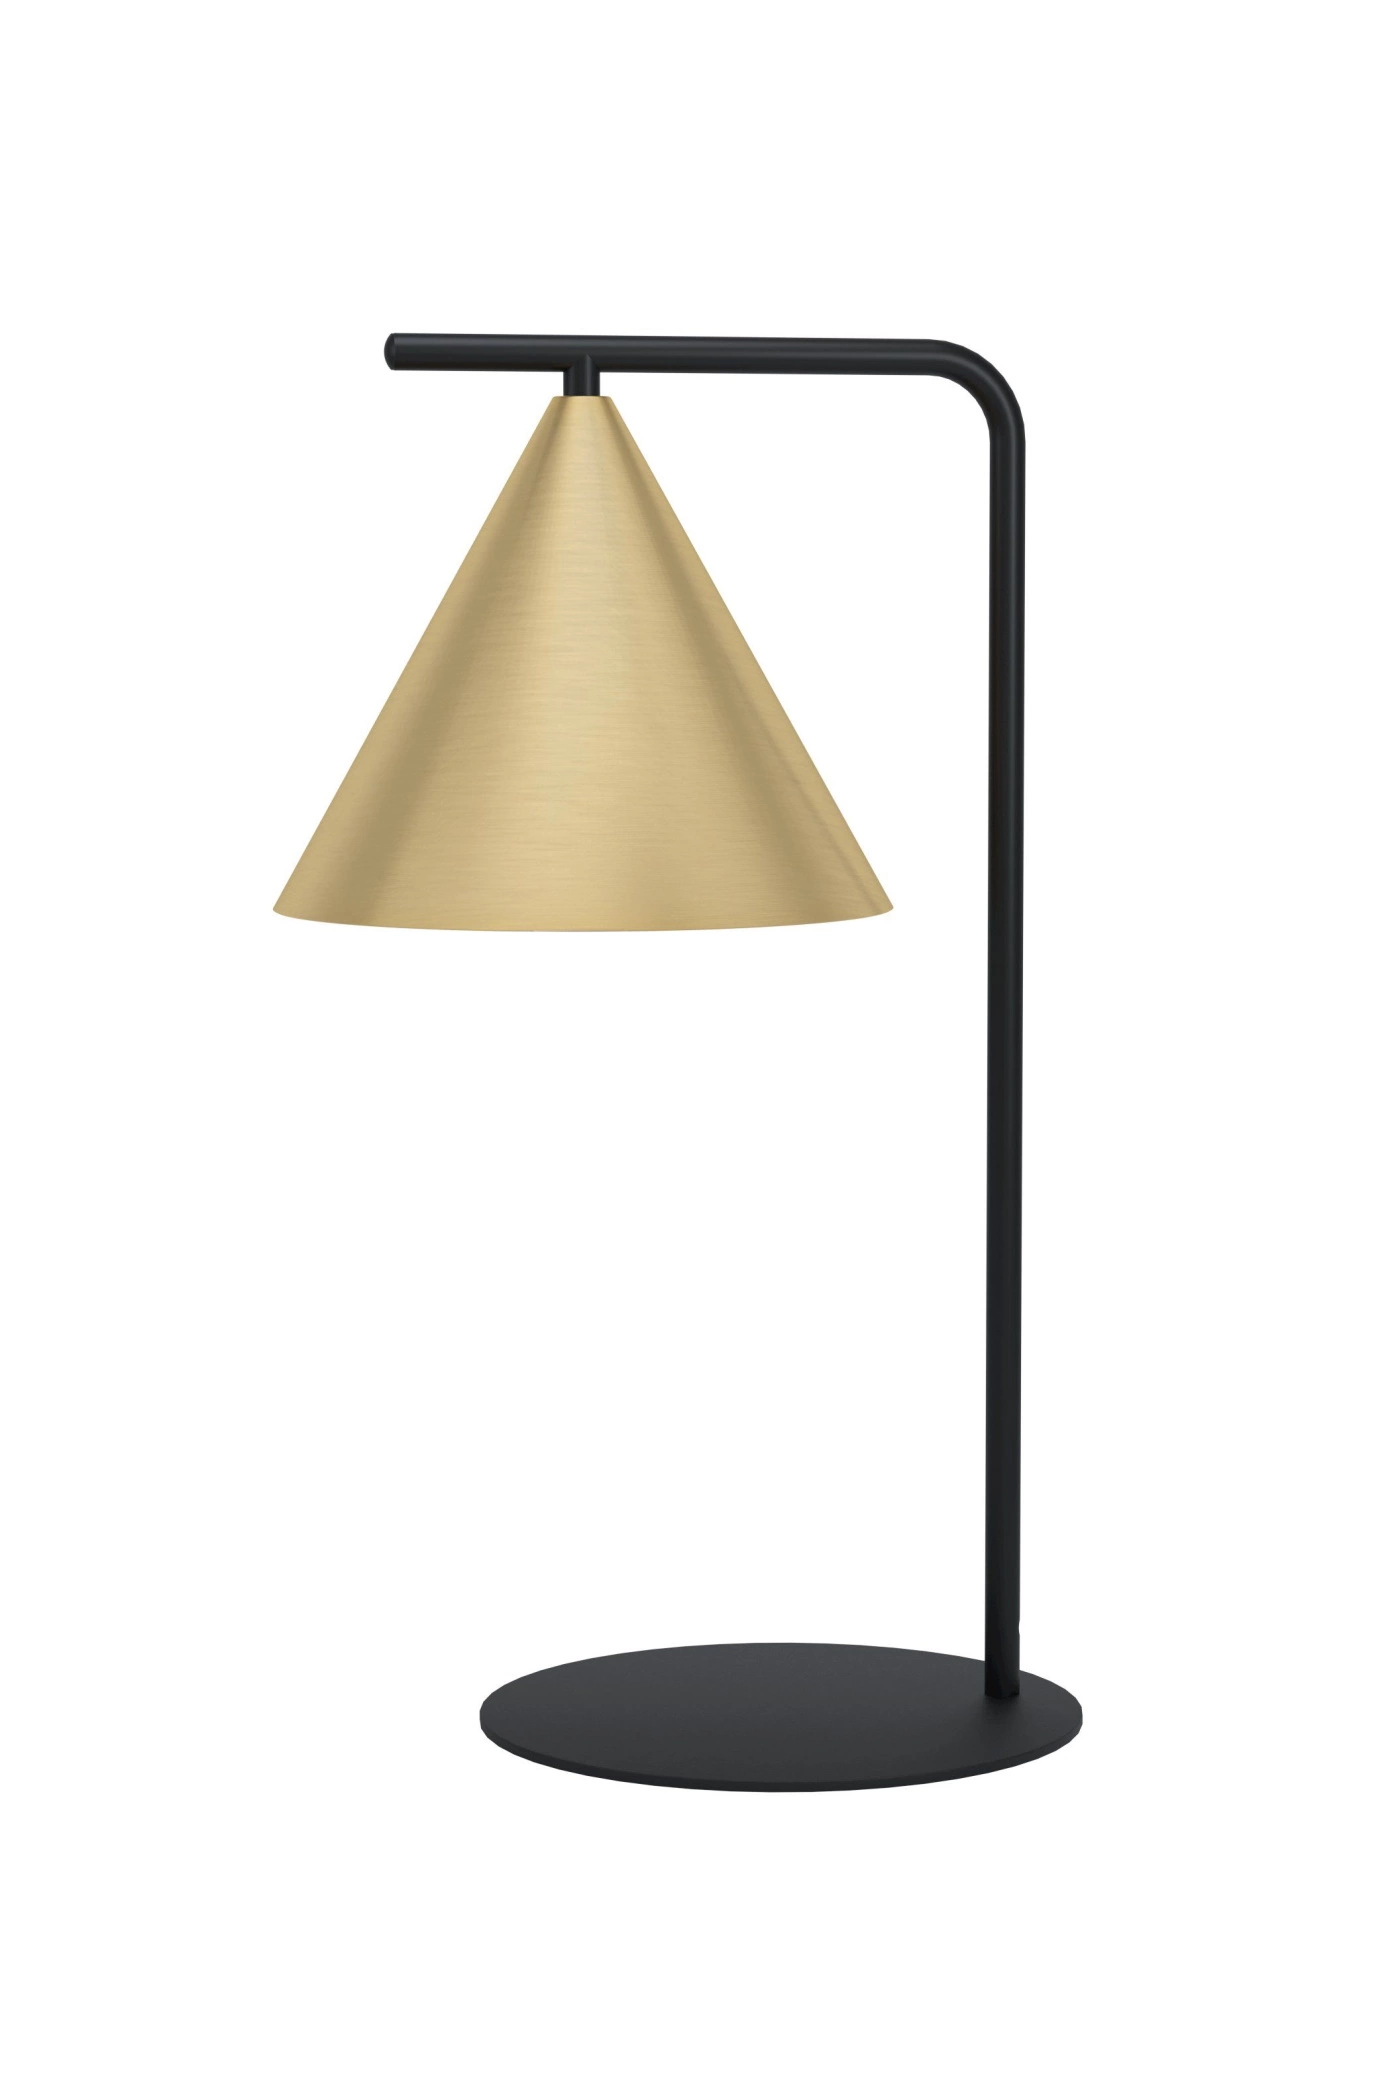   
                        Настільна лампа EGLO (Австрія) 53001    
                         у стилі лофт.  
                        Тип джерела світла: cвітлодіодні led, енергозберігаючі, розжарювання.                                                 Кольори плафонів і підвісок: золото.                         Матеріал: сталь.                          фото 1